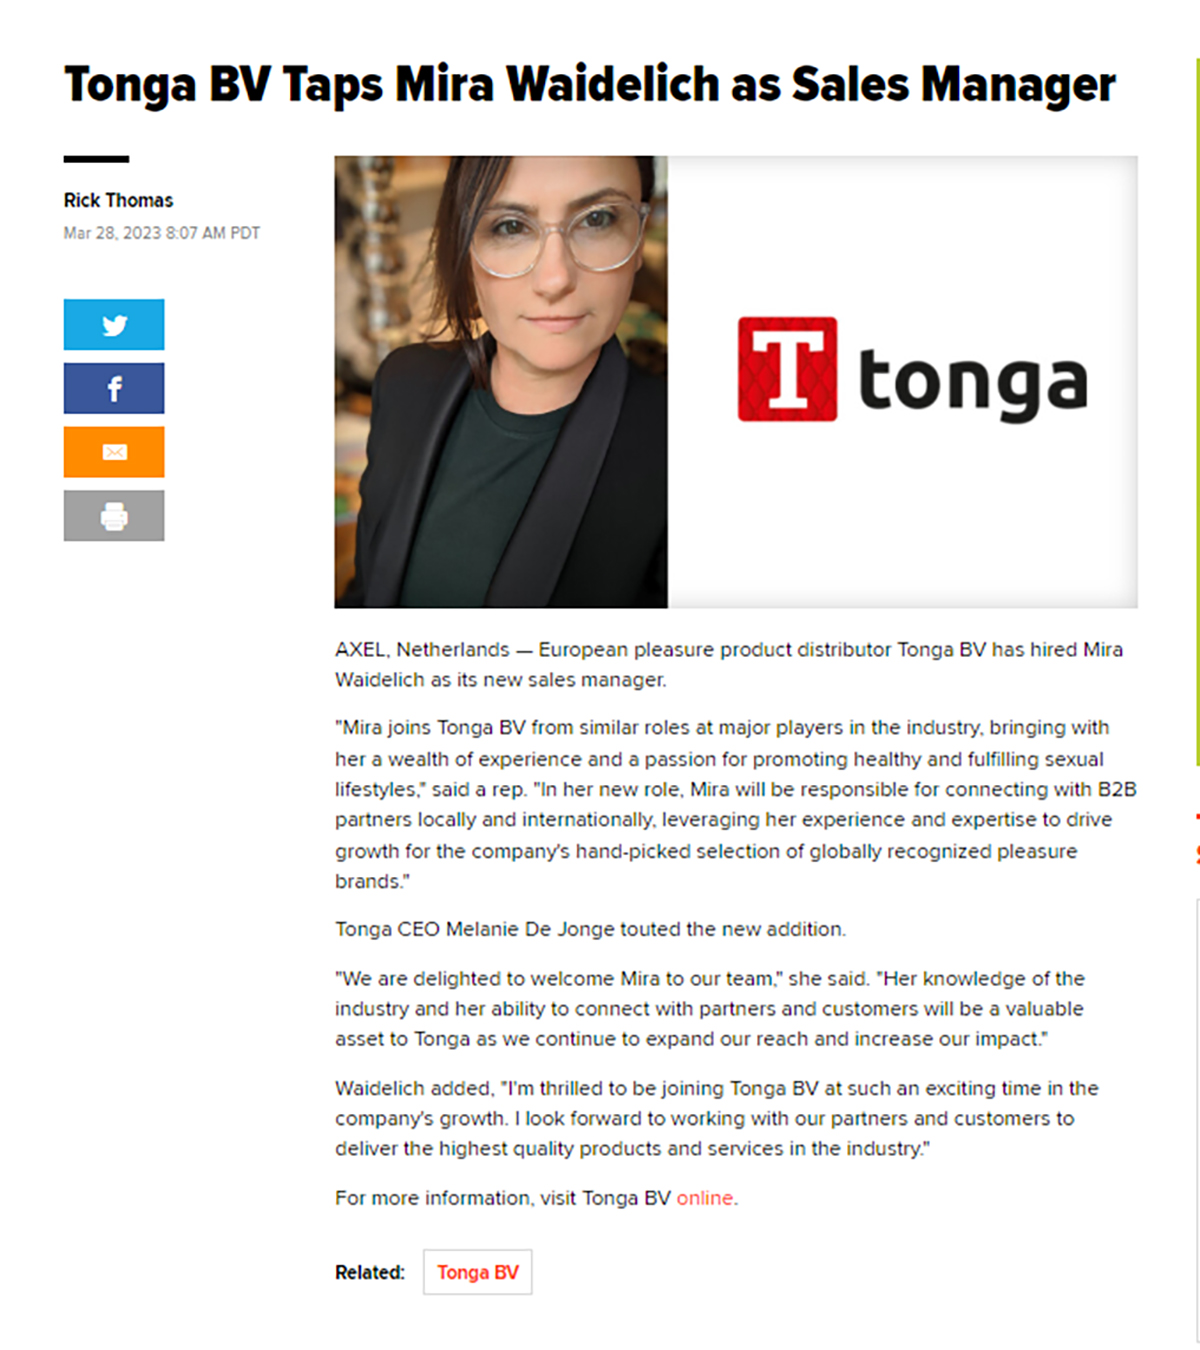 2023-03 Xbiz - Tonga BV taps Mira Waidelich as Sales Manager